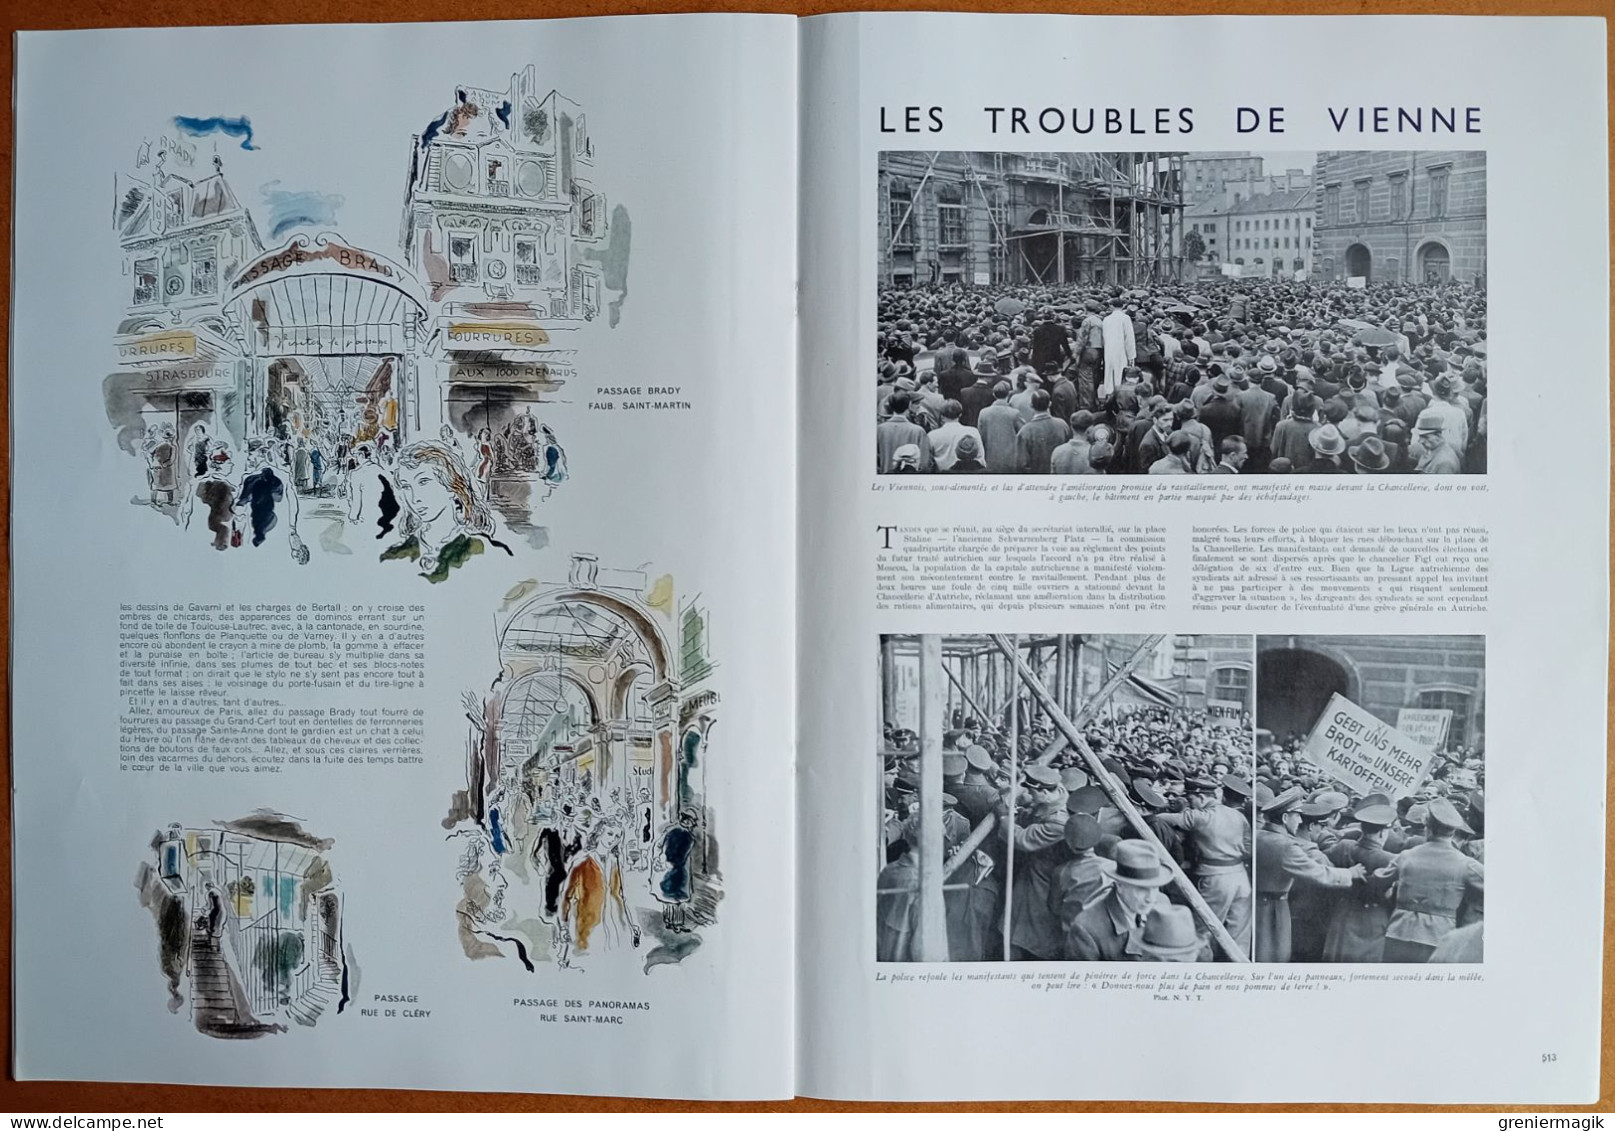 France Illustration N°86 24/05/1947 Félix Eboué/Indochine échec du viet-minh/Les passages parisiens/Foire de Paris